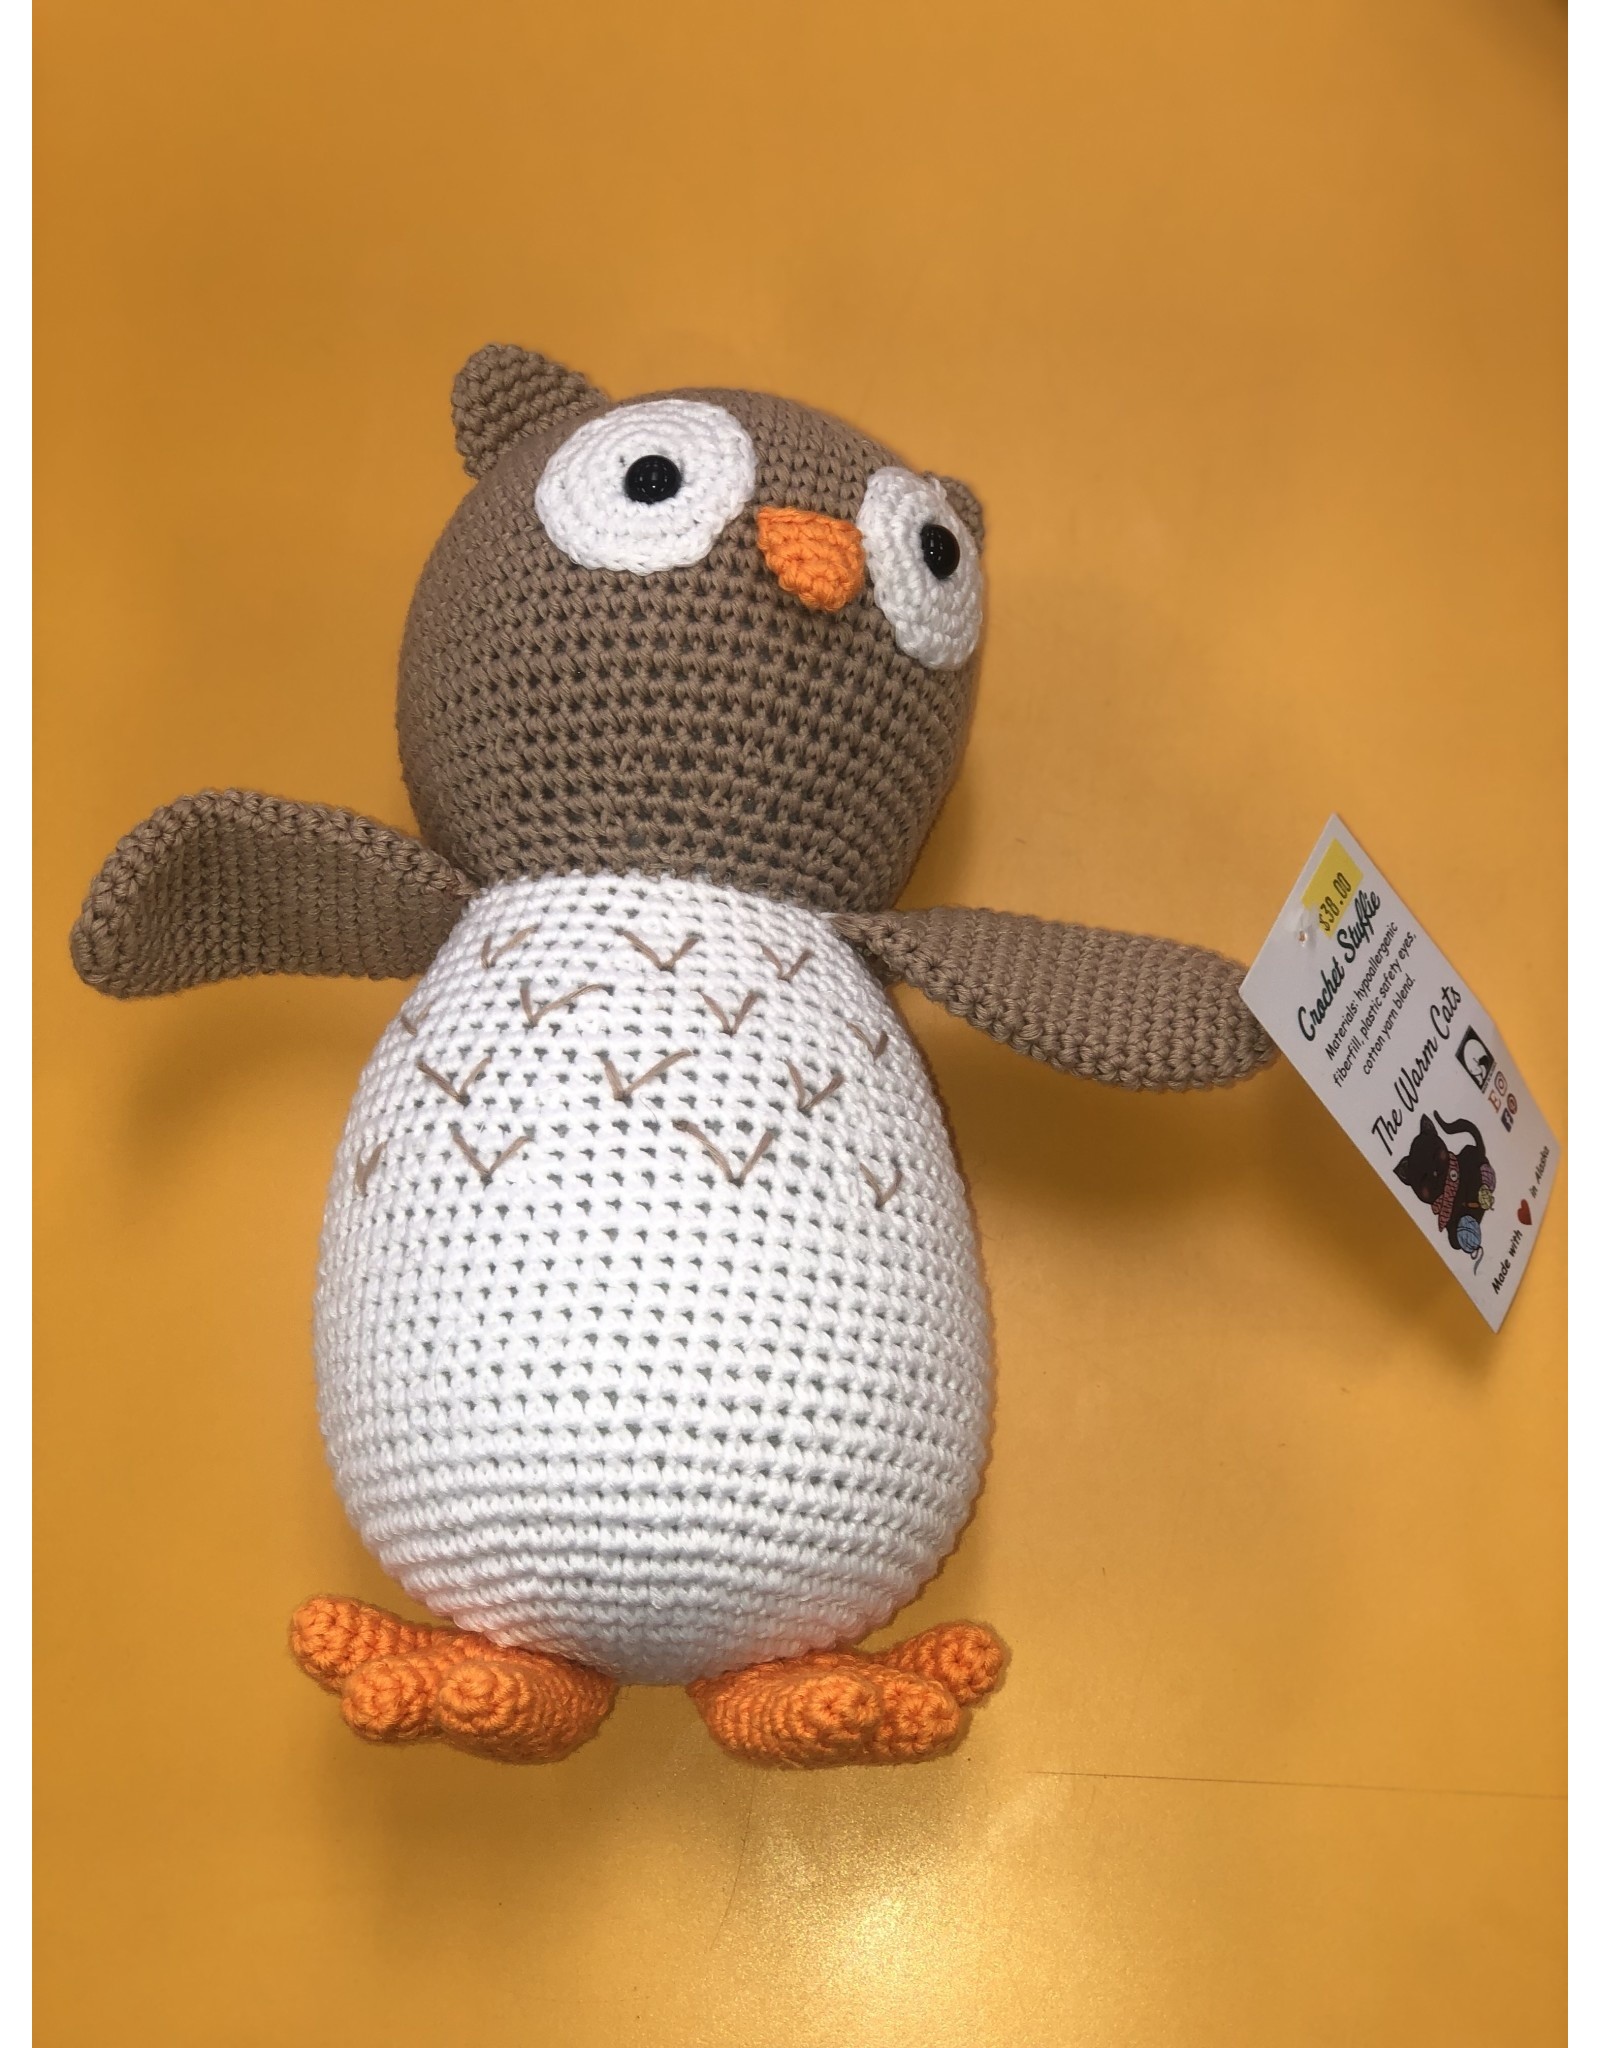 10" Crochet Owl